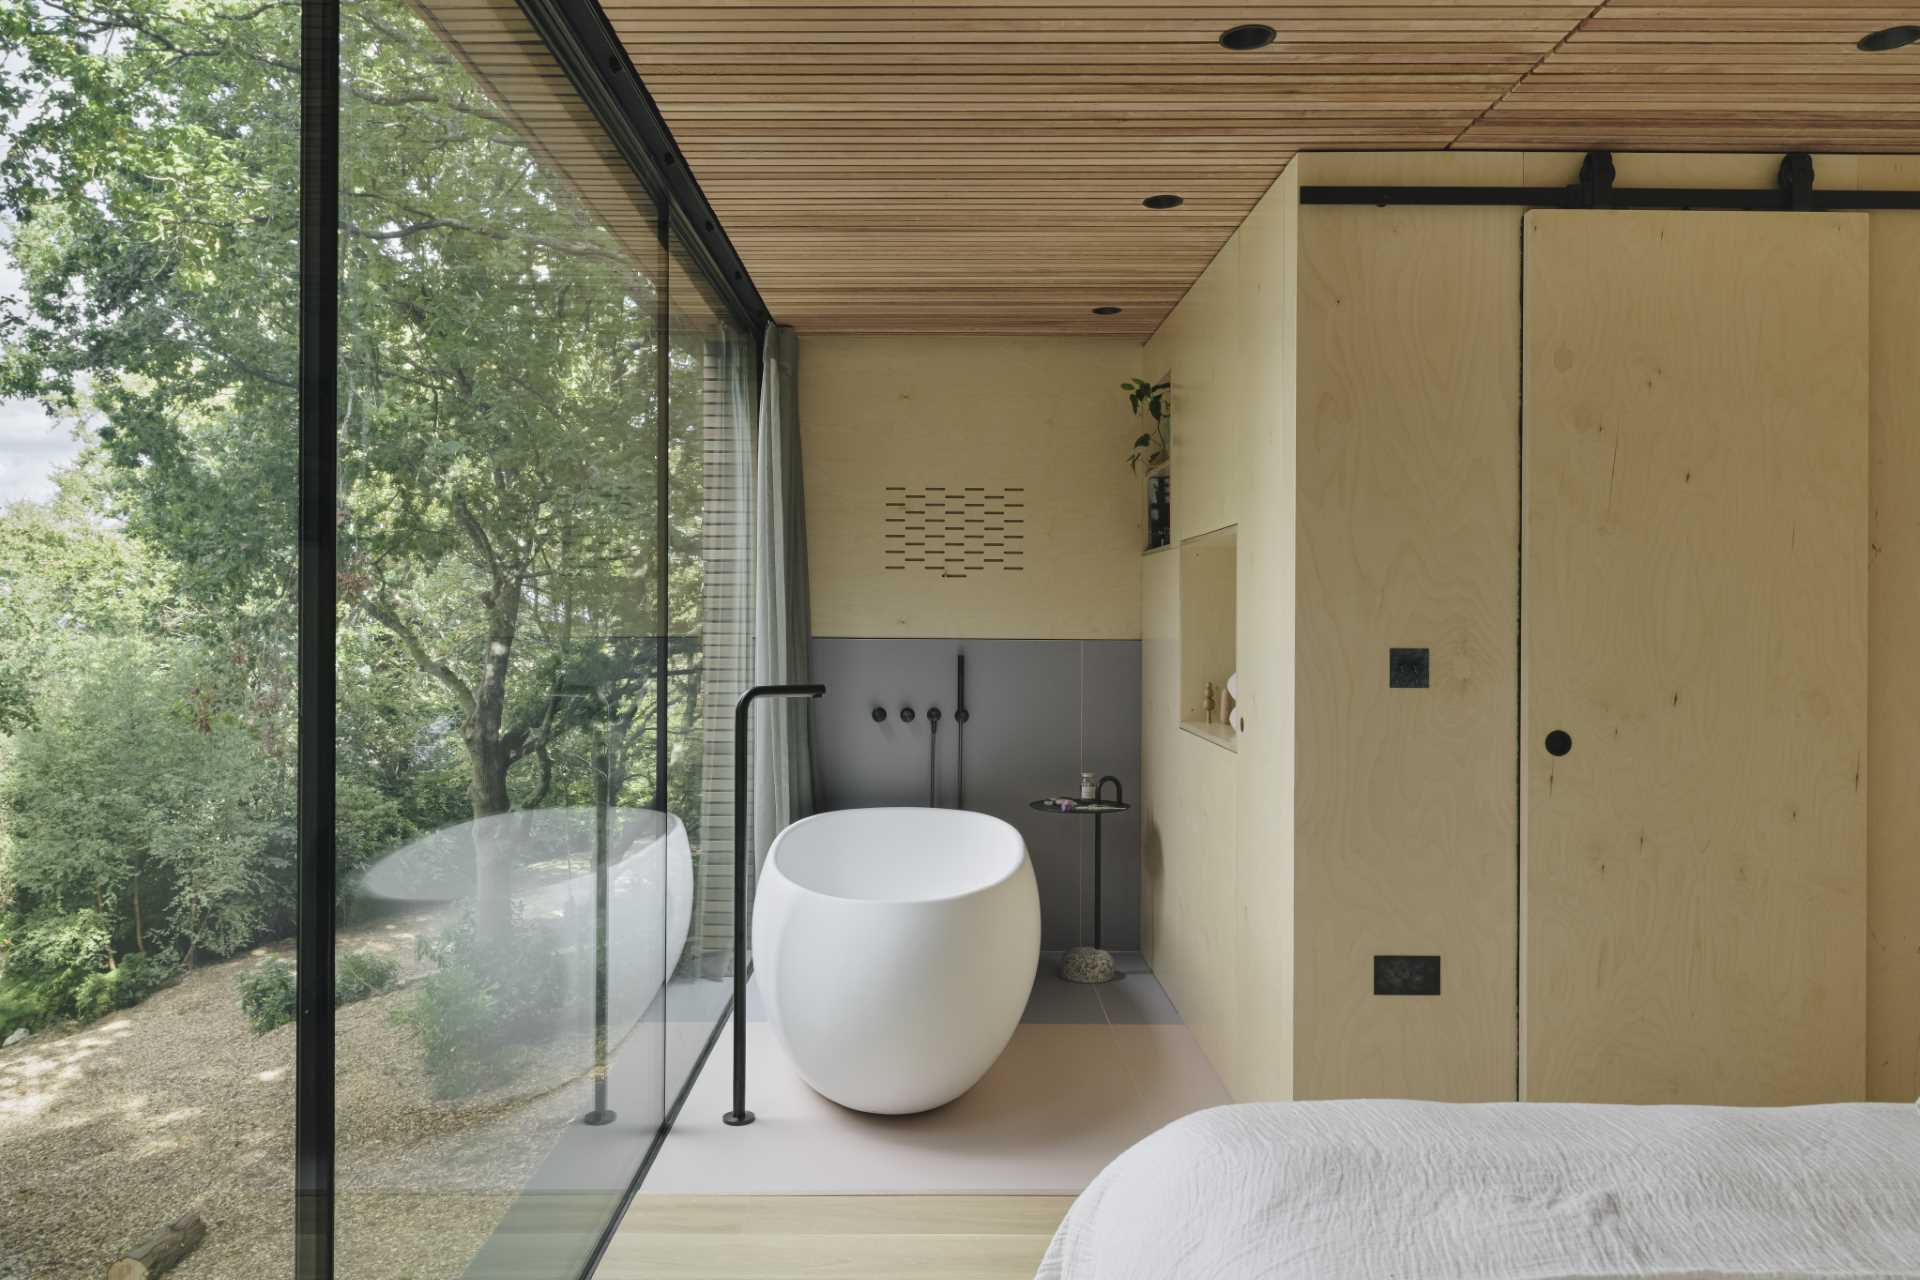 یک اتاق خواب با یک وان حمام مستقل و یک حمام اختصاصی که پشت یک در کشویی پنهان شده است.